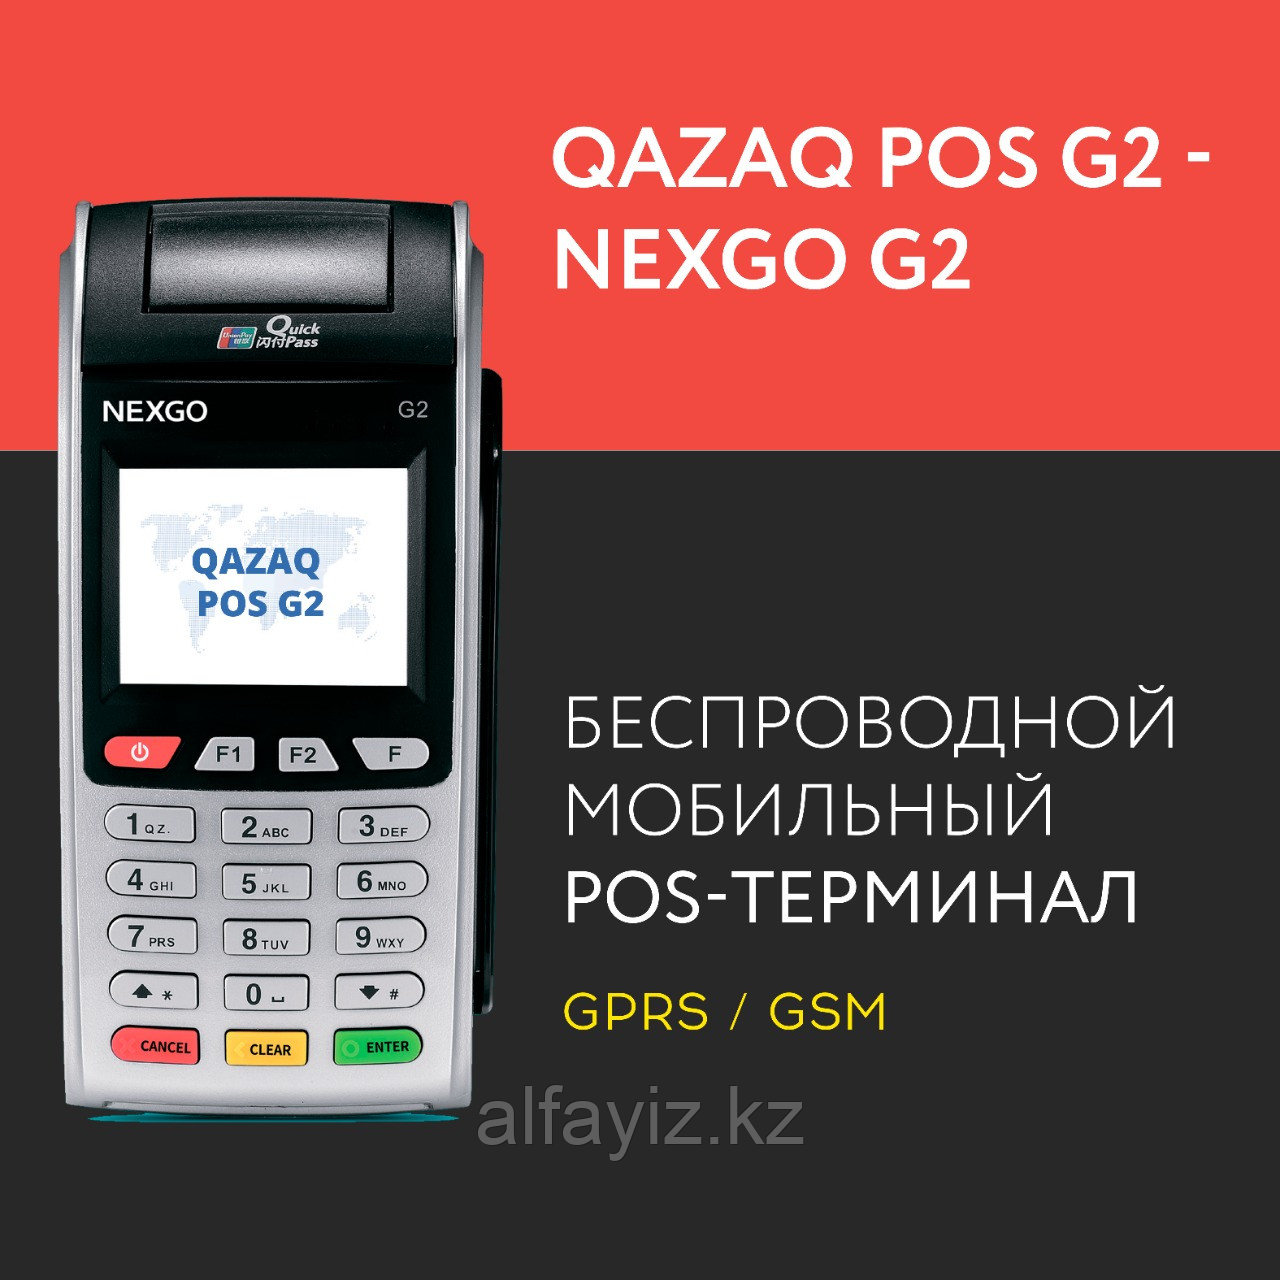 Беспроводной банковский терминал Qazaq POS G2 - Nexgo G2